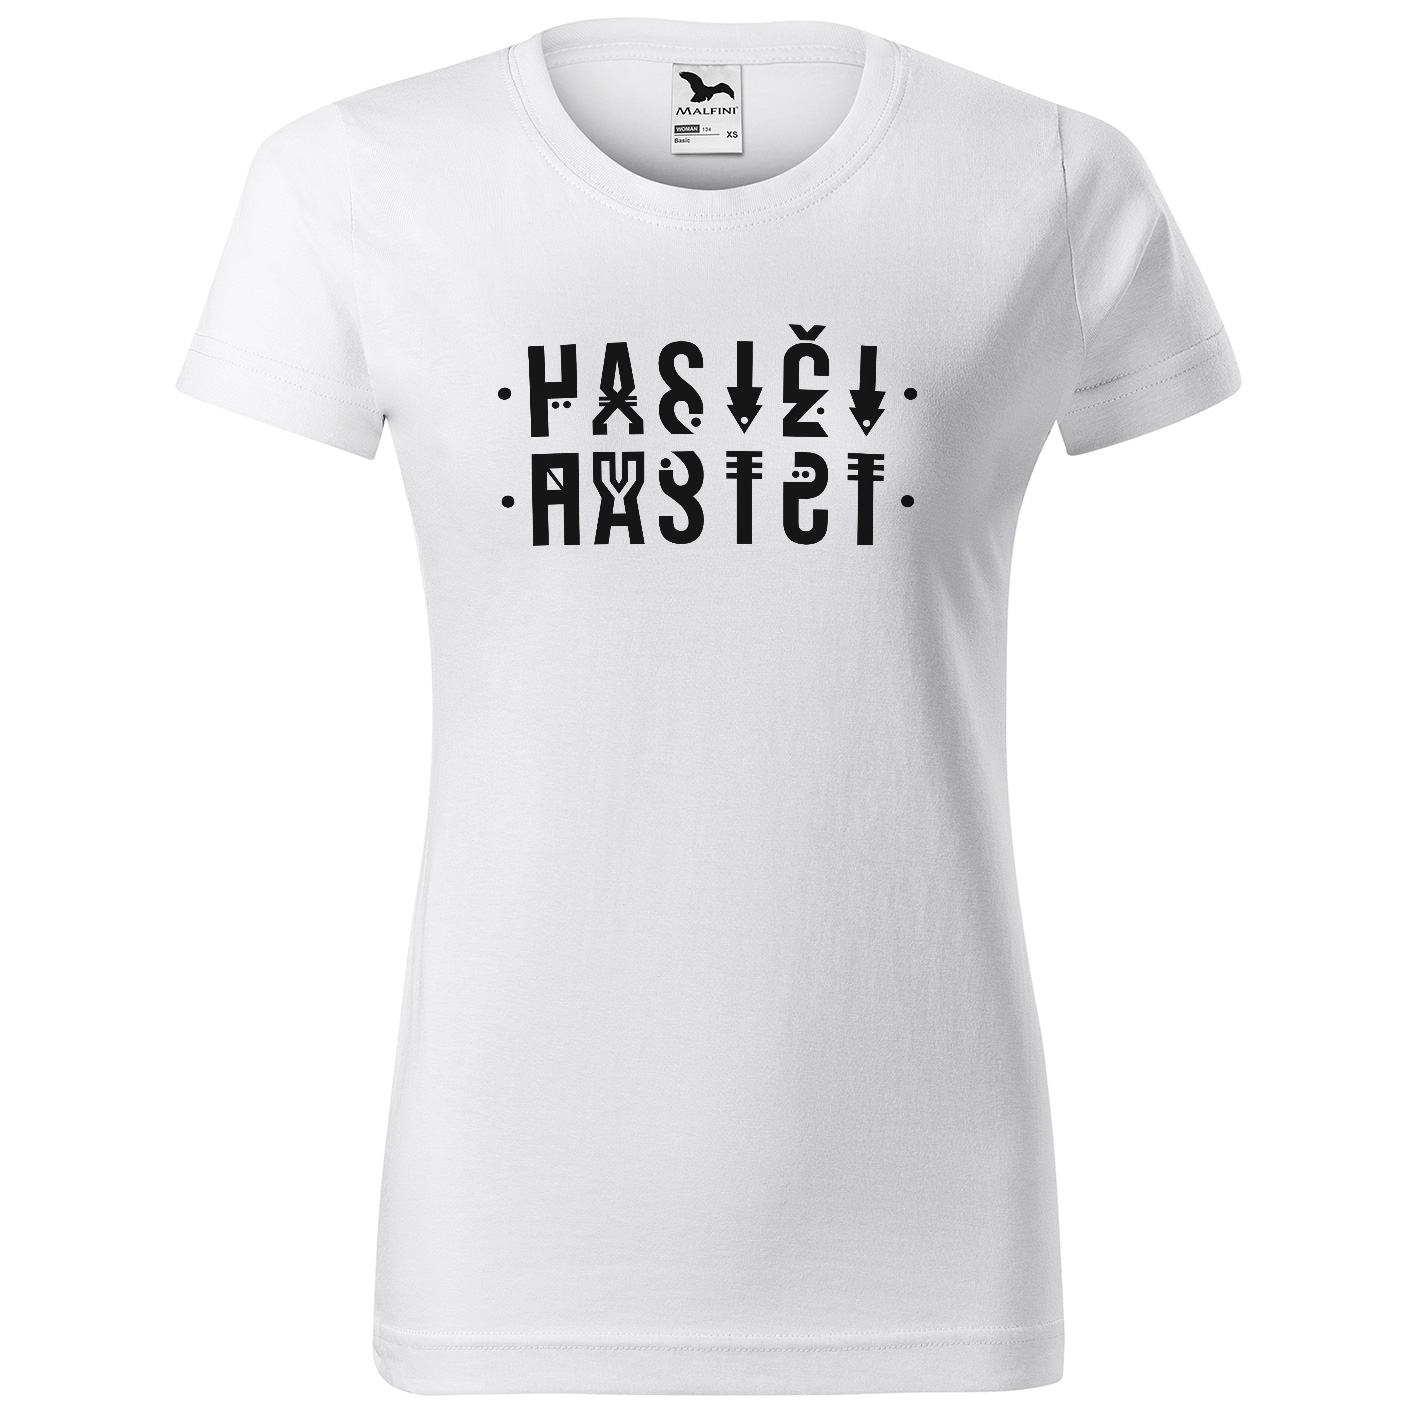 Tričko Hasiči – šifra (Velikost: XS, Typ: pro ženy, Barva trička: Bílá)